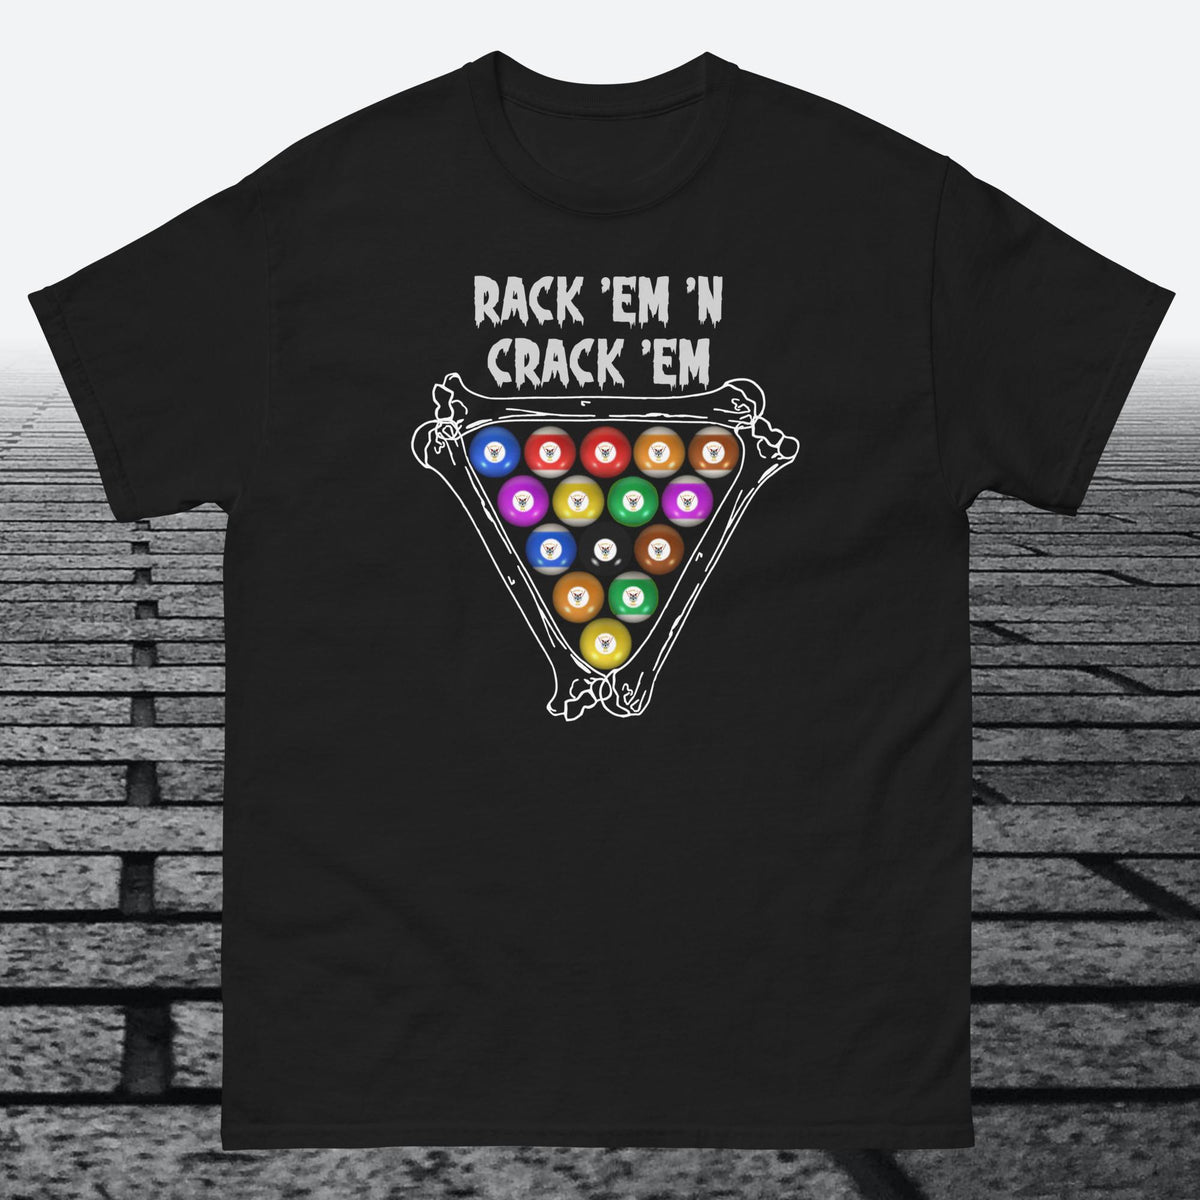 Rack 'Em 'N Crack 'Em, on front of shirt Cotton T-shirt